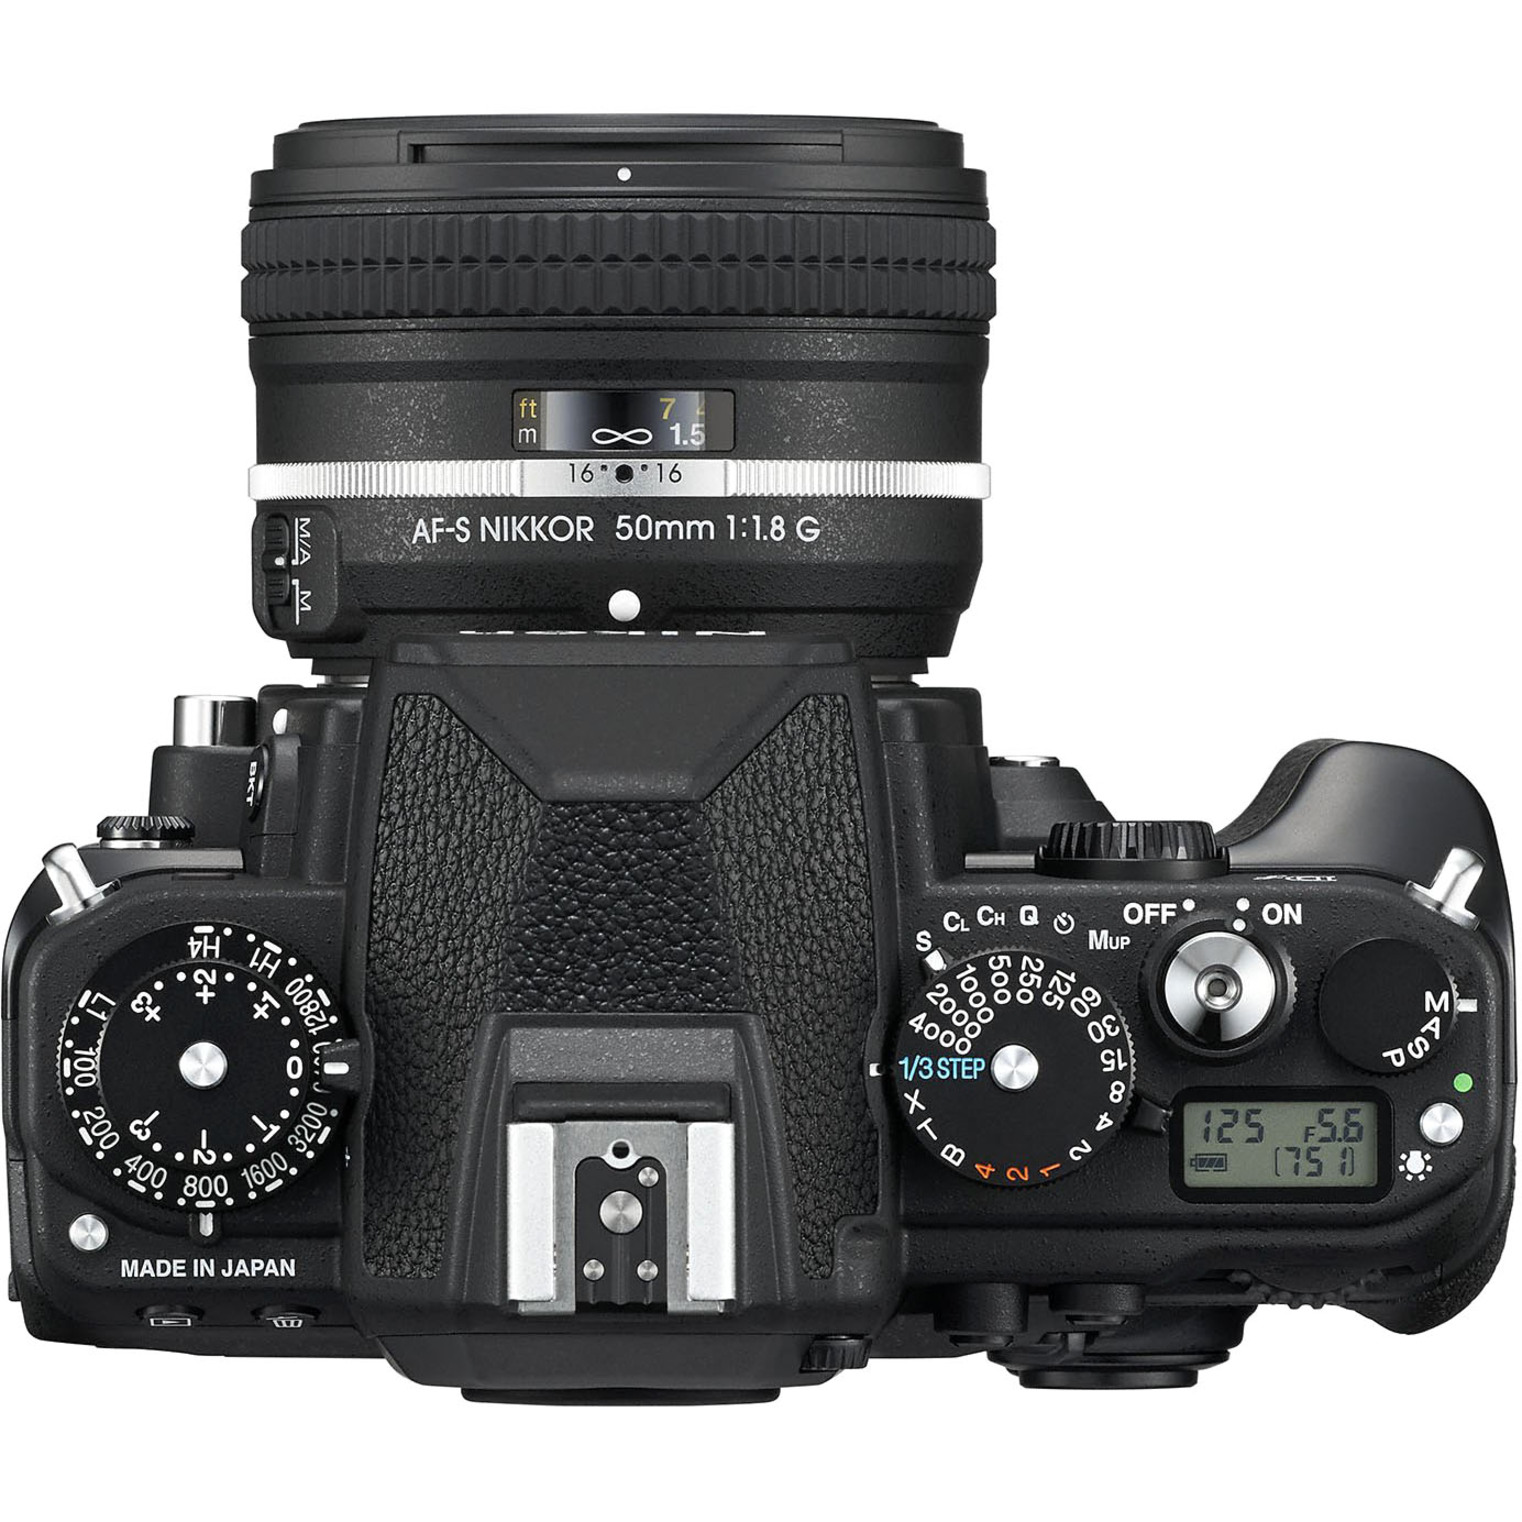 Nikon Df 16.2 Megapixel Digital SLR Camera with Lens, 1.97", Black - image 5 of 5